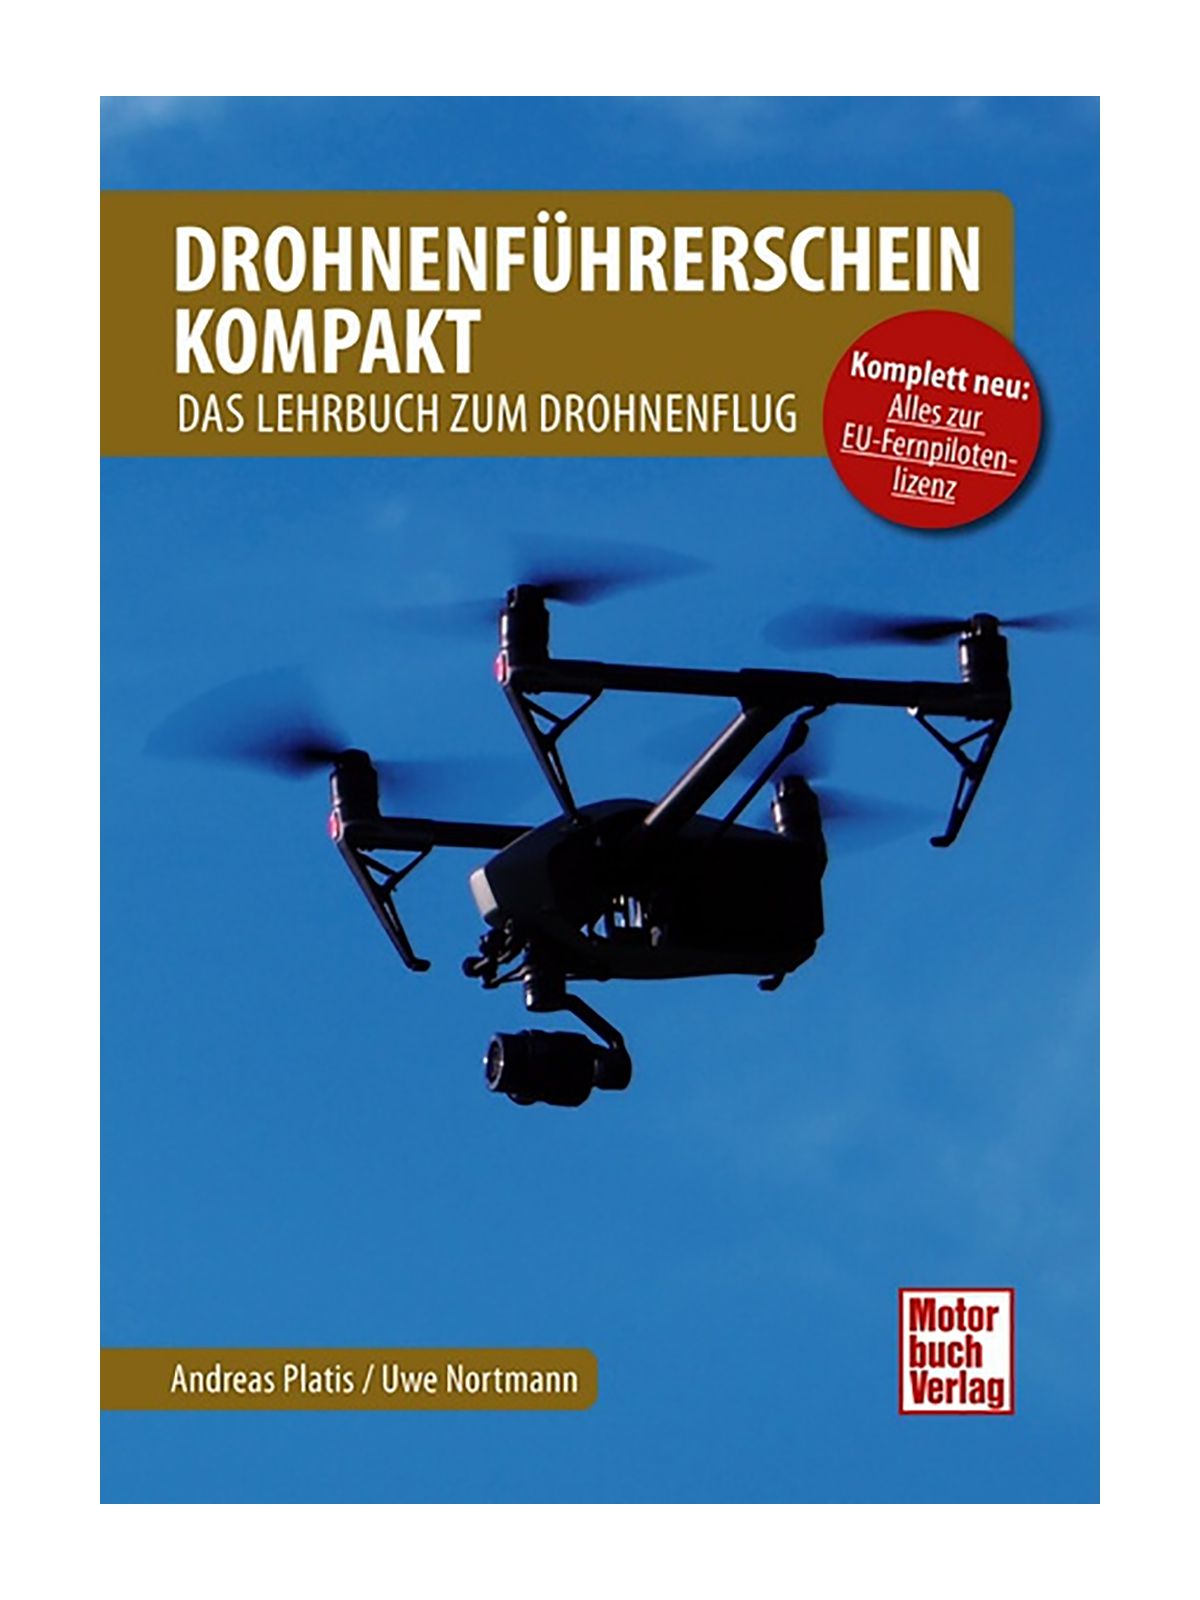 Drohnenführerschein kompakt - Lehrbuch zum Drohnenflug